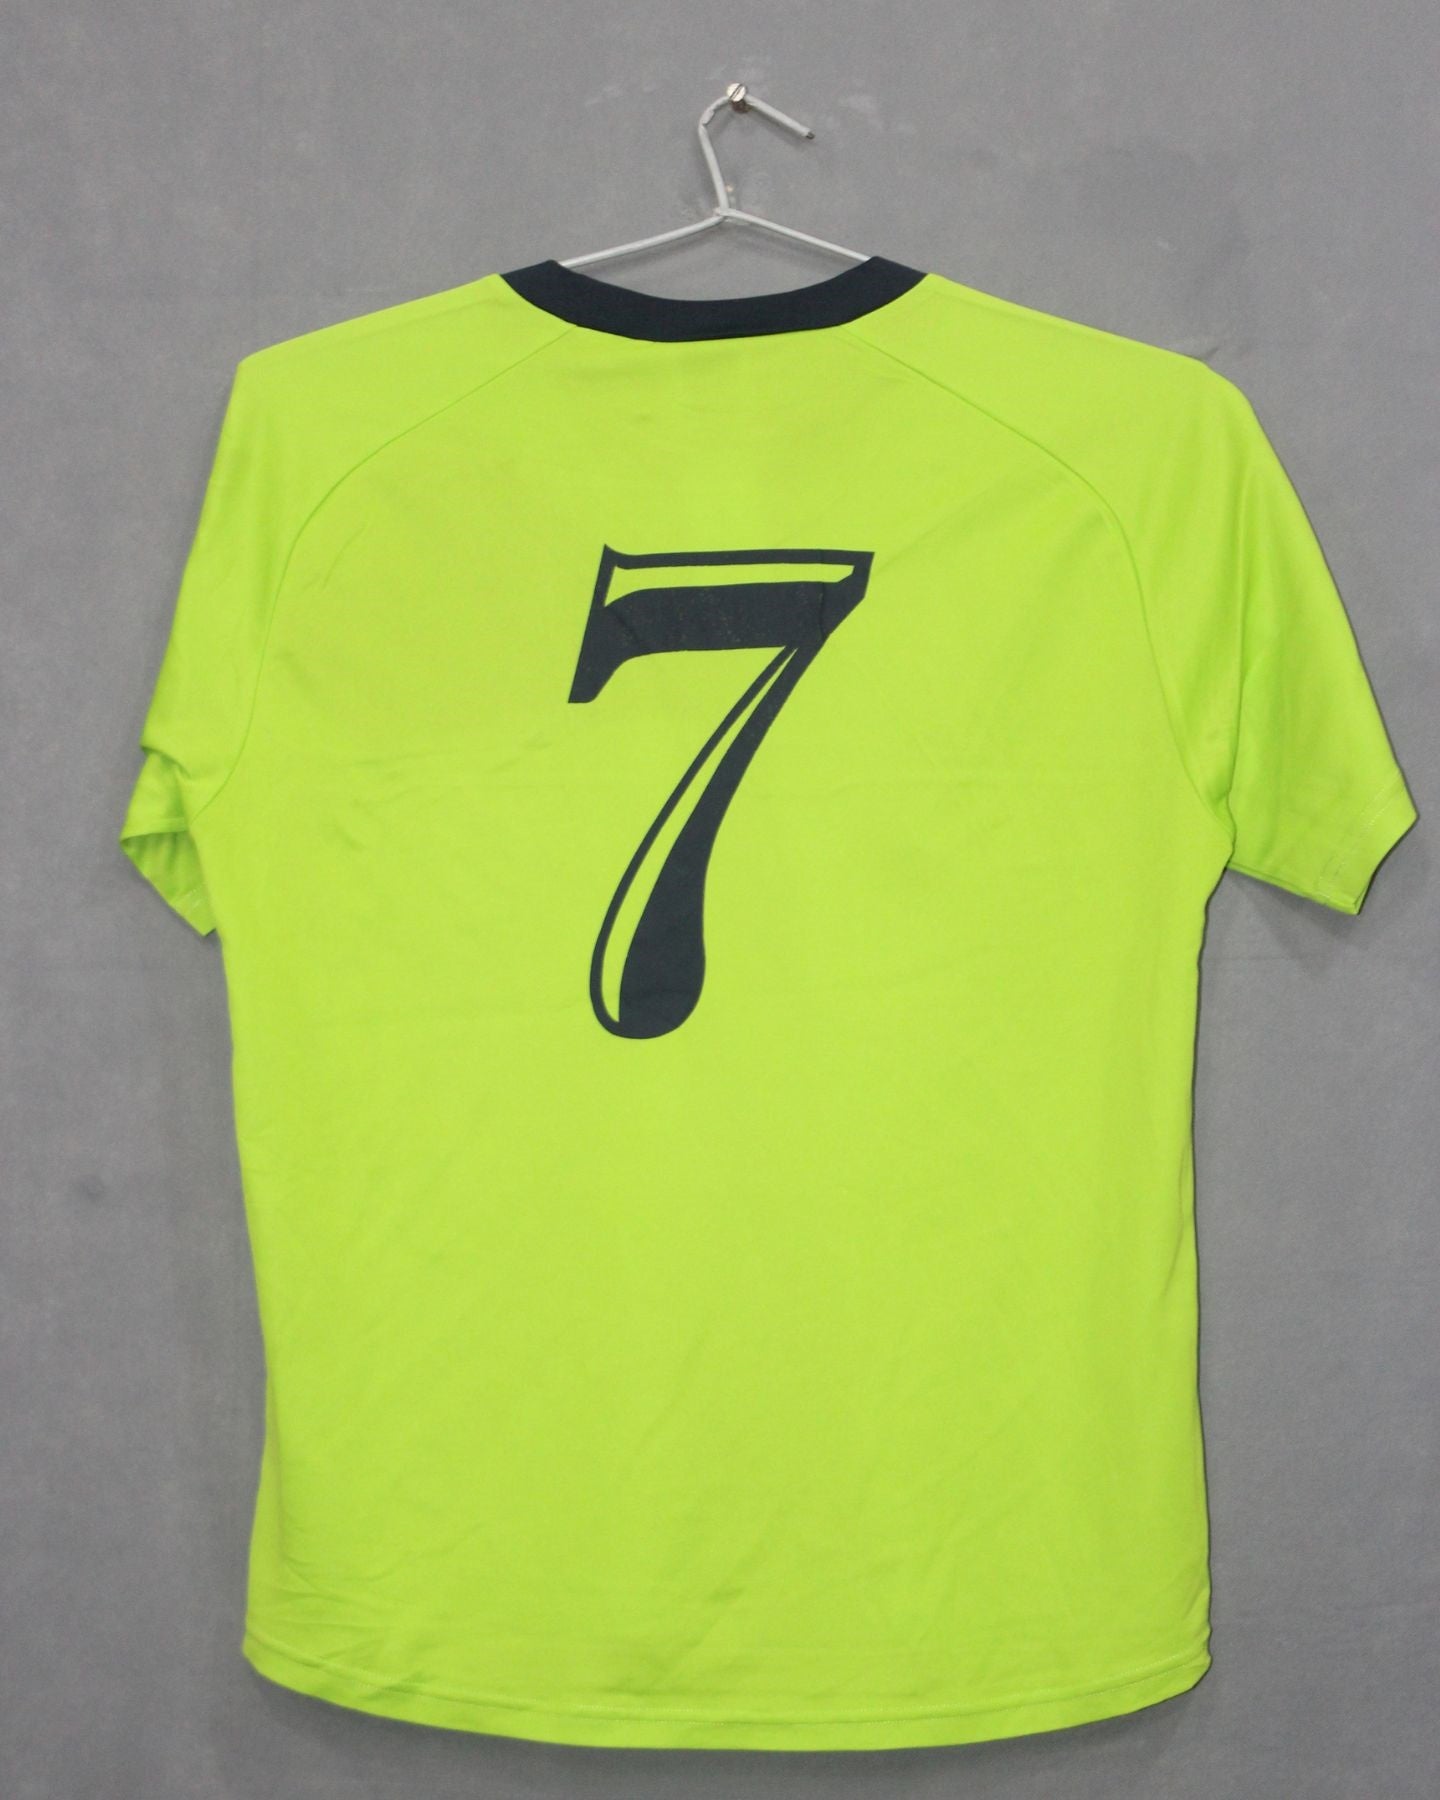 Umbro Branded Original For Polyester Sports V Neck Men T Shirt